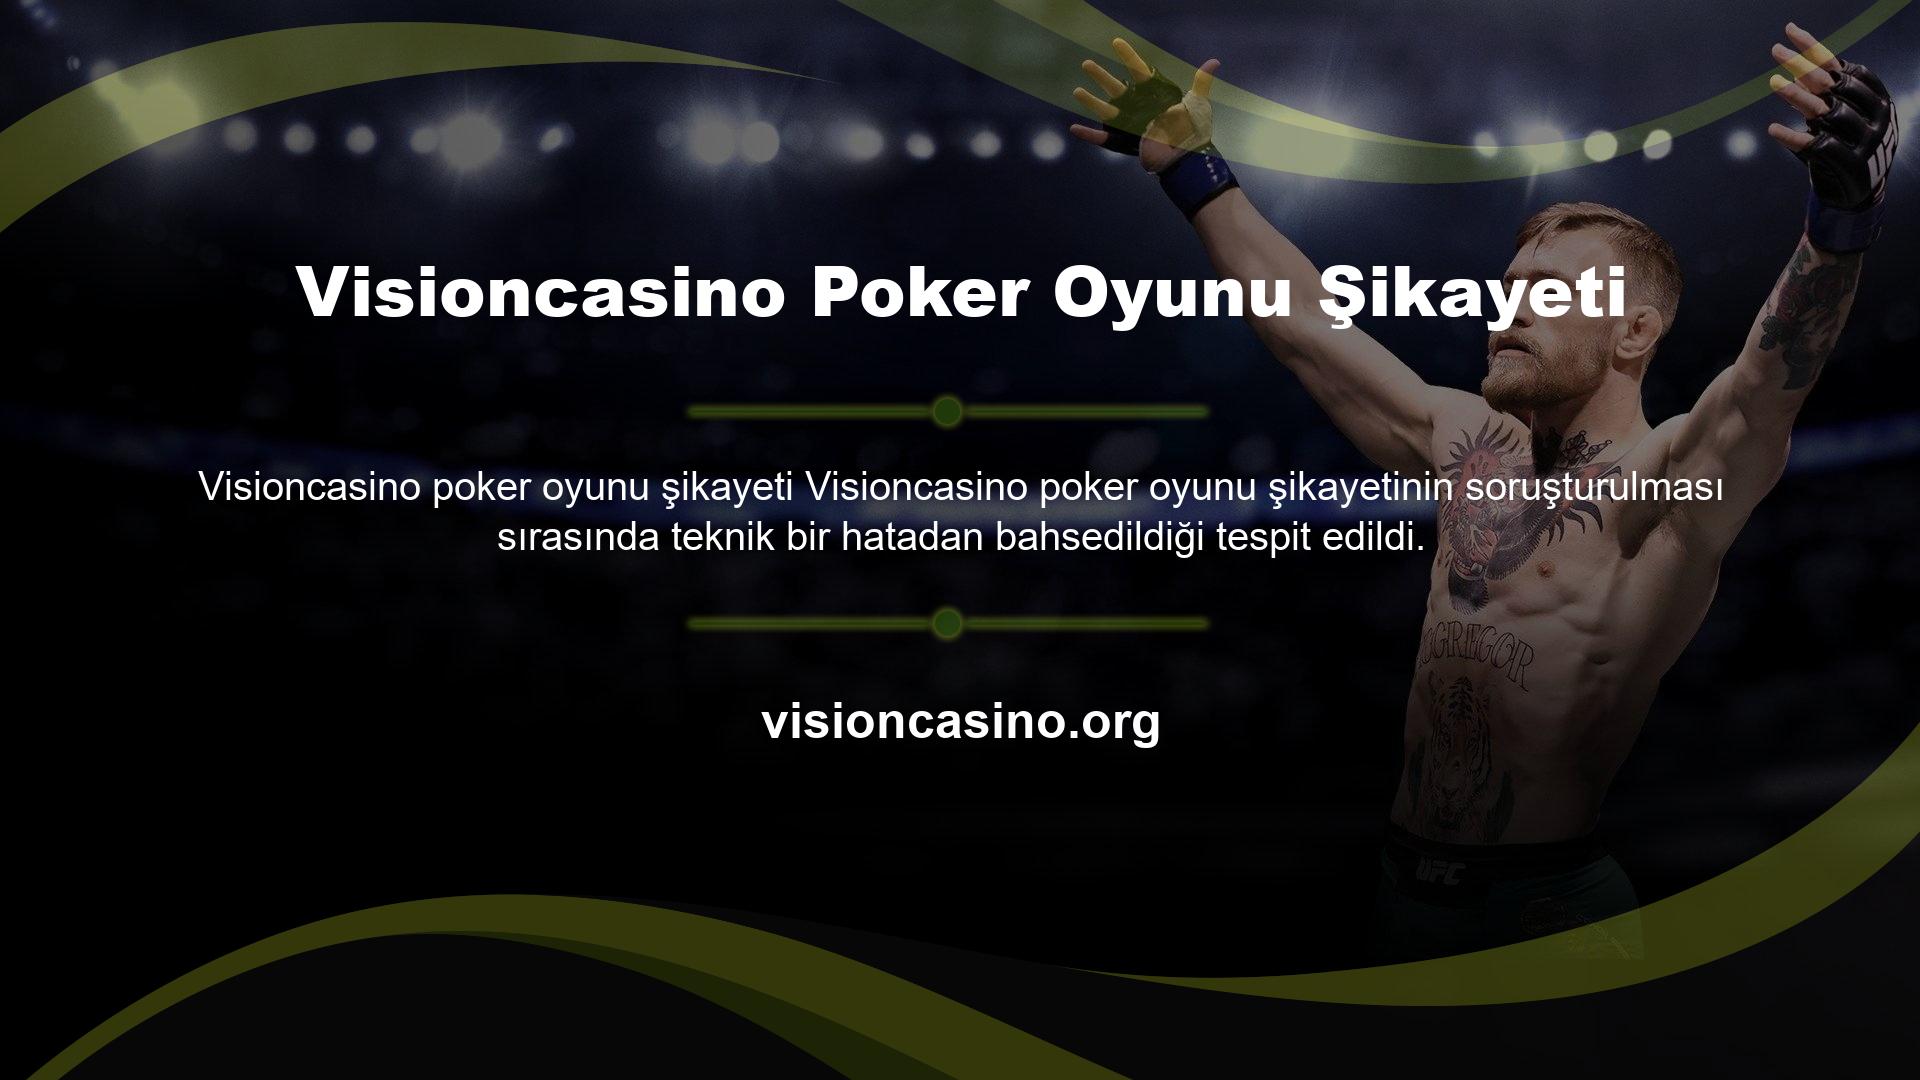 Visioncasino Poker Oyunu Şikayeti